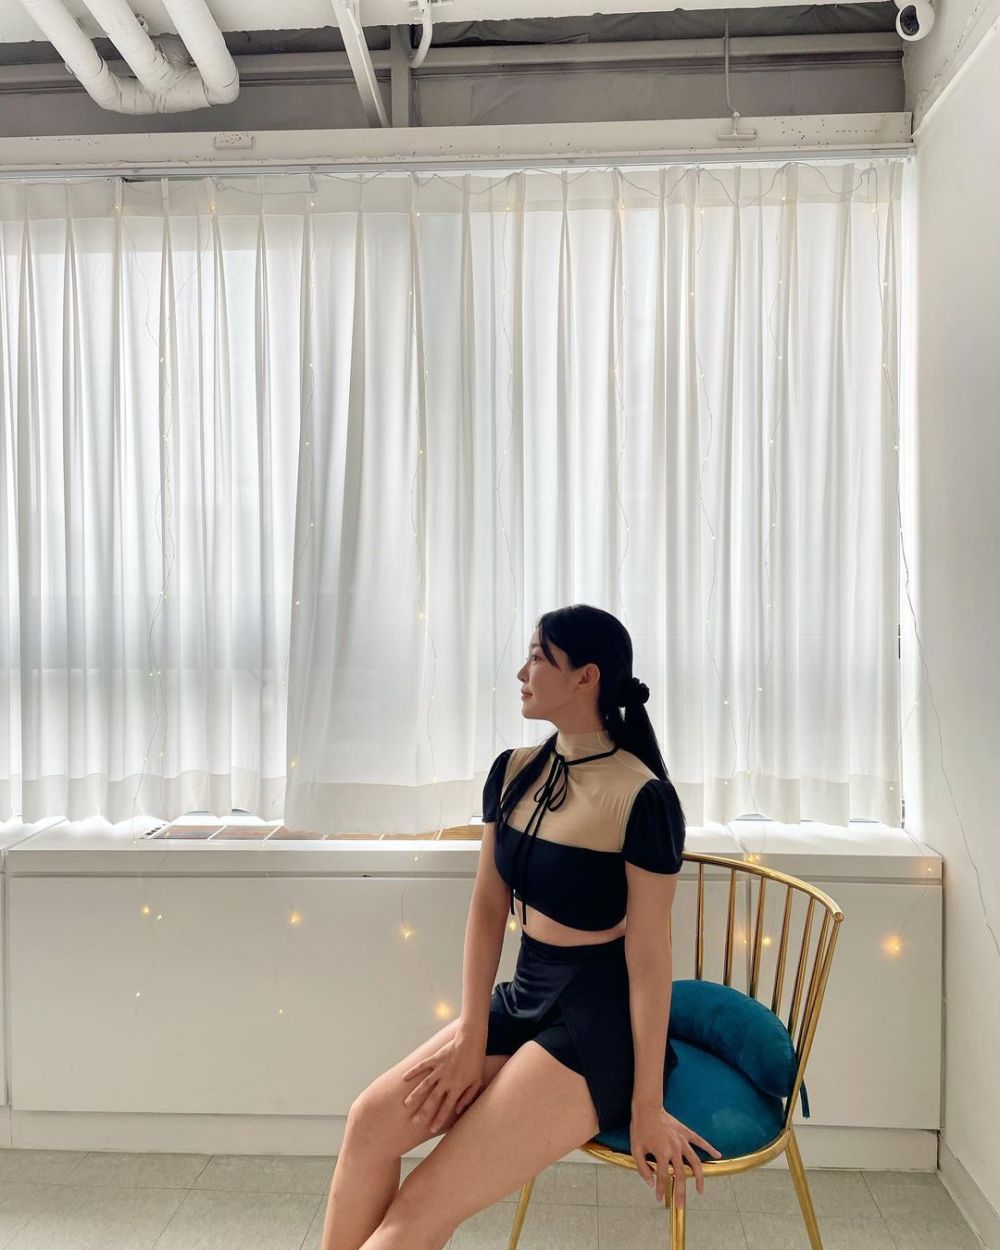 Kim Ga-eun Sexy and Hottest Photos , Latest Pics